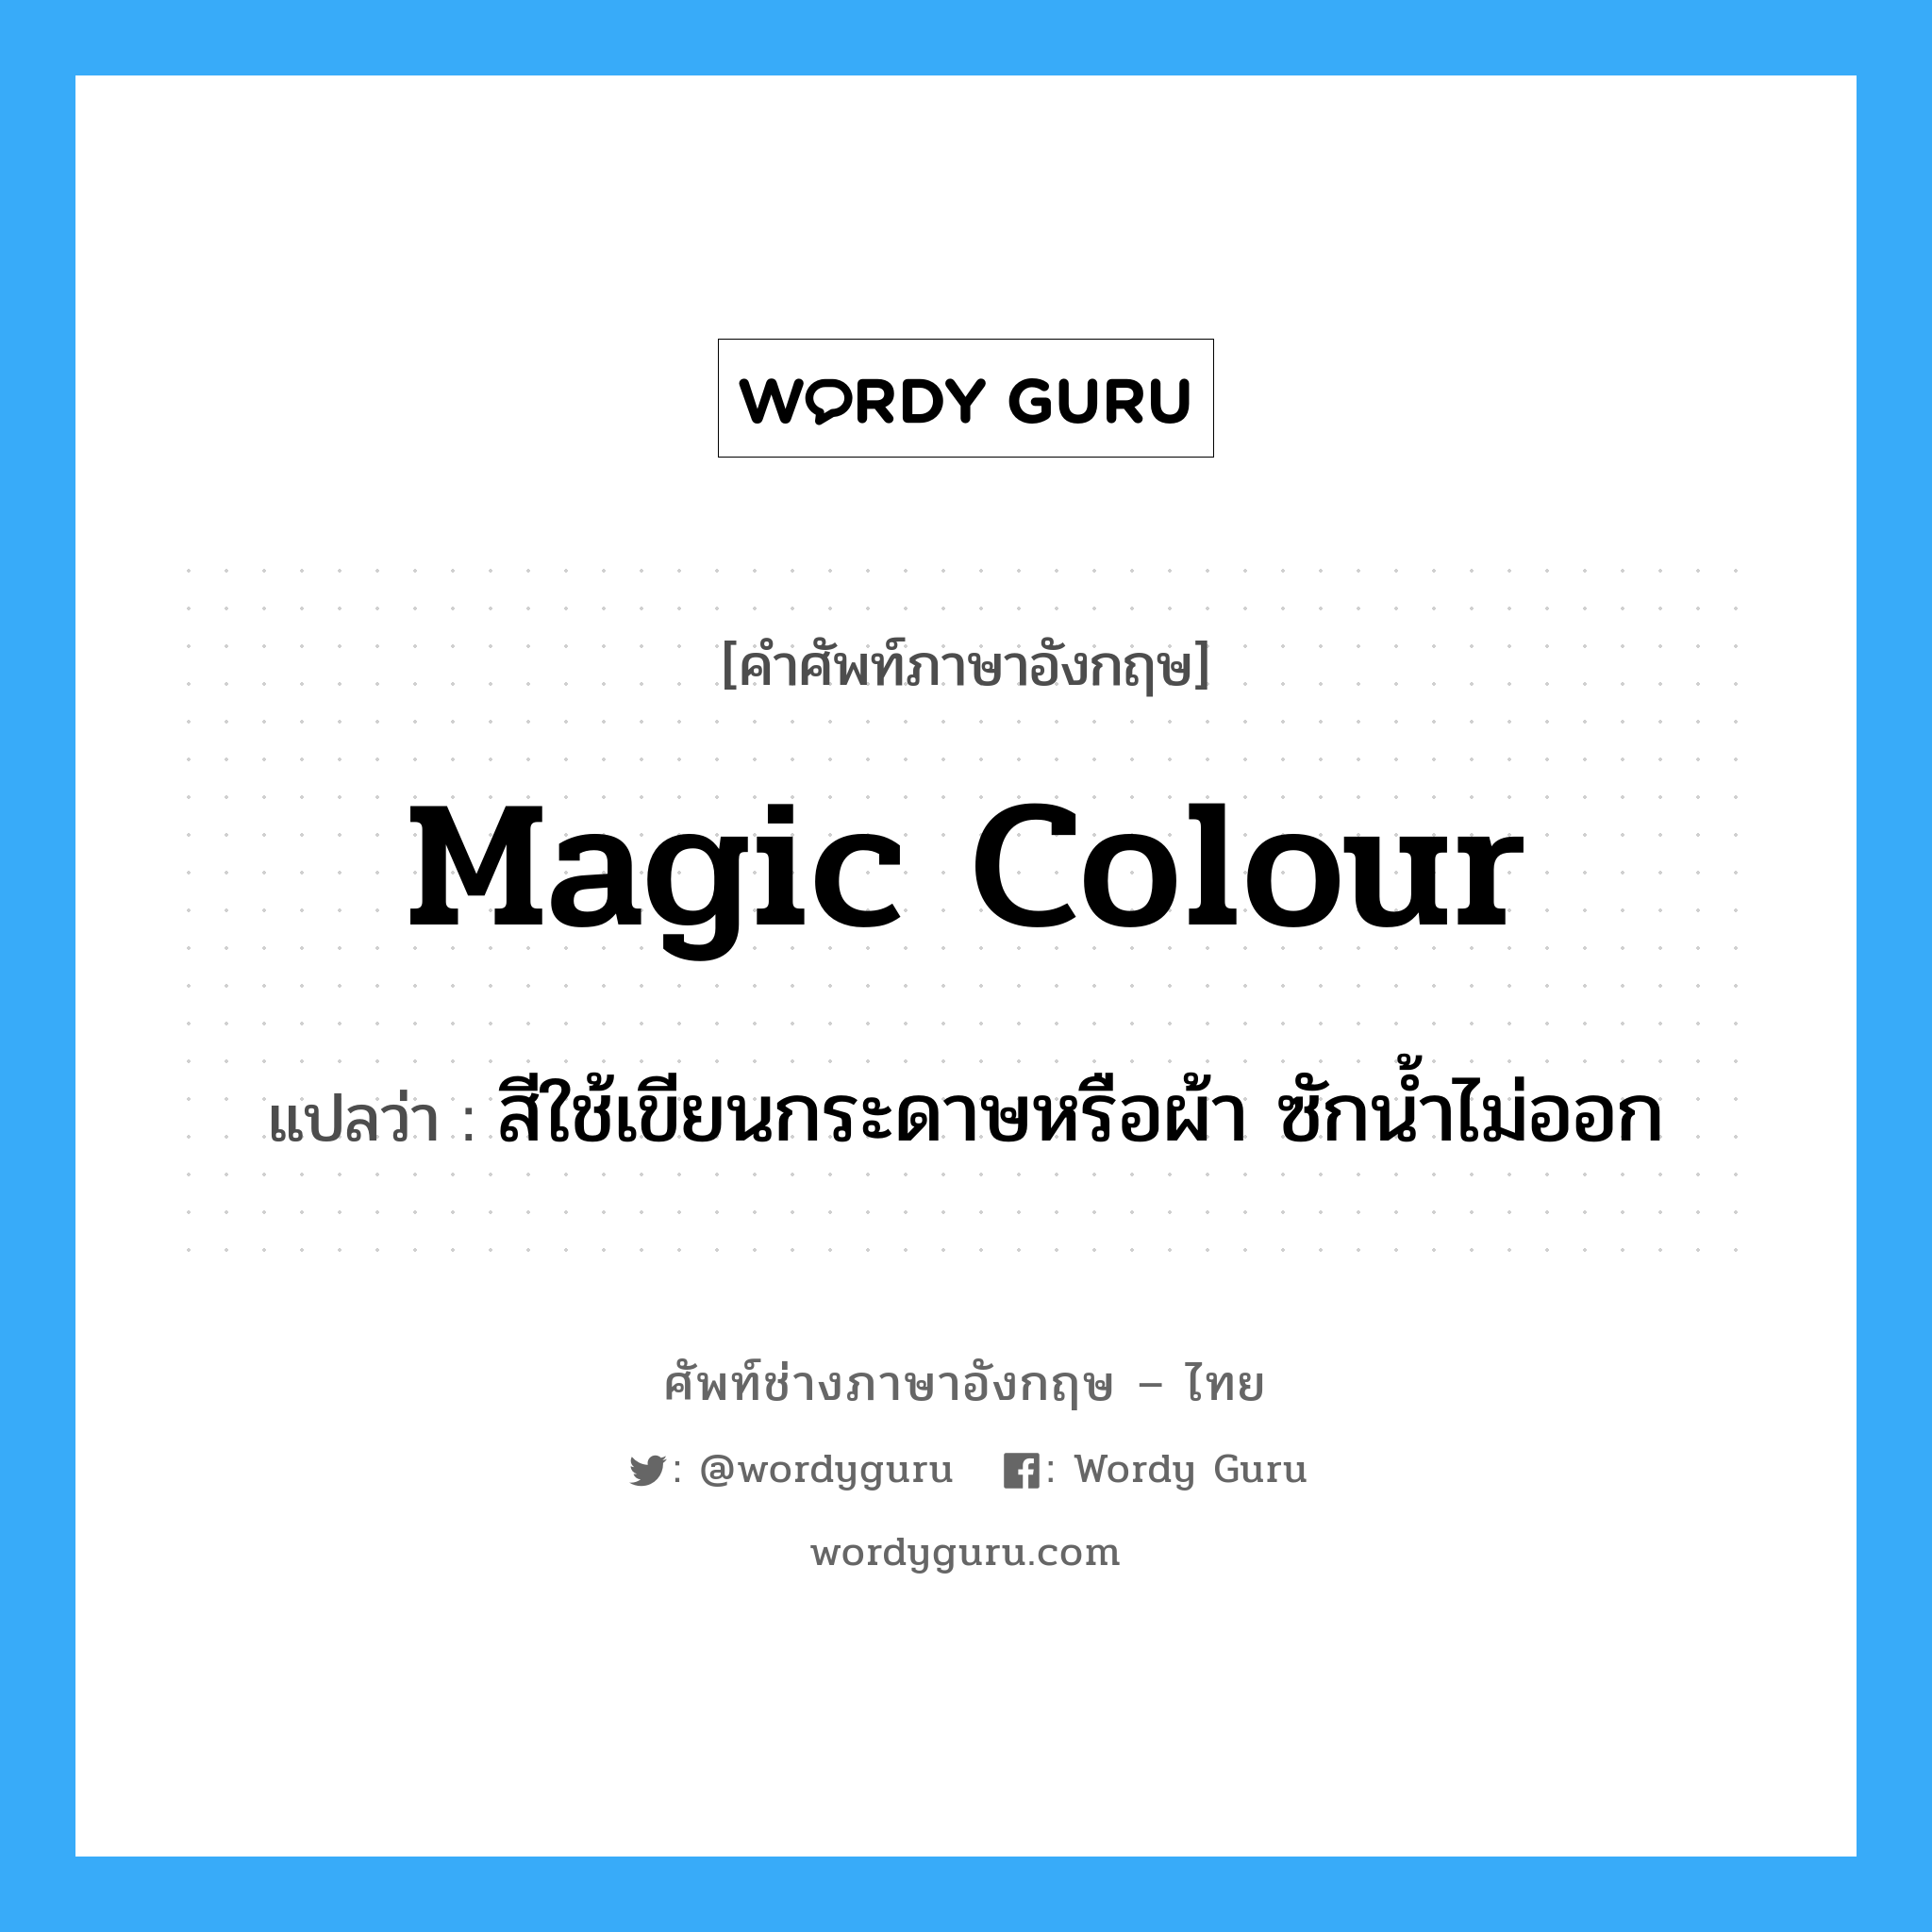 สีใช้เขียนกระดาษหรือผ้า ซักน้ำไม่ออก ภาษาอังกฤษ?, คำศัพท์ช่างภาษาอังกฤษ - ไทย สีใช้เขียนกระดาษหรือผ้า ซักน้ำไม่ออก คำศัพท์ภาษาอังกฤษ สีใช้เขียนกระดาษหรือผ้า ซักน้ำไม่ออก แปลว่า magic colour